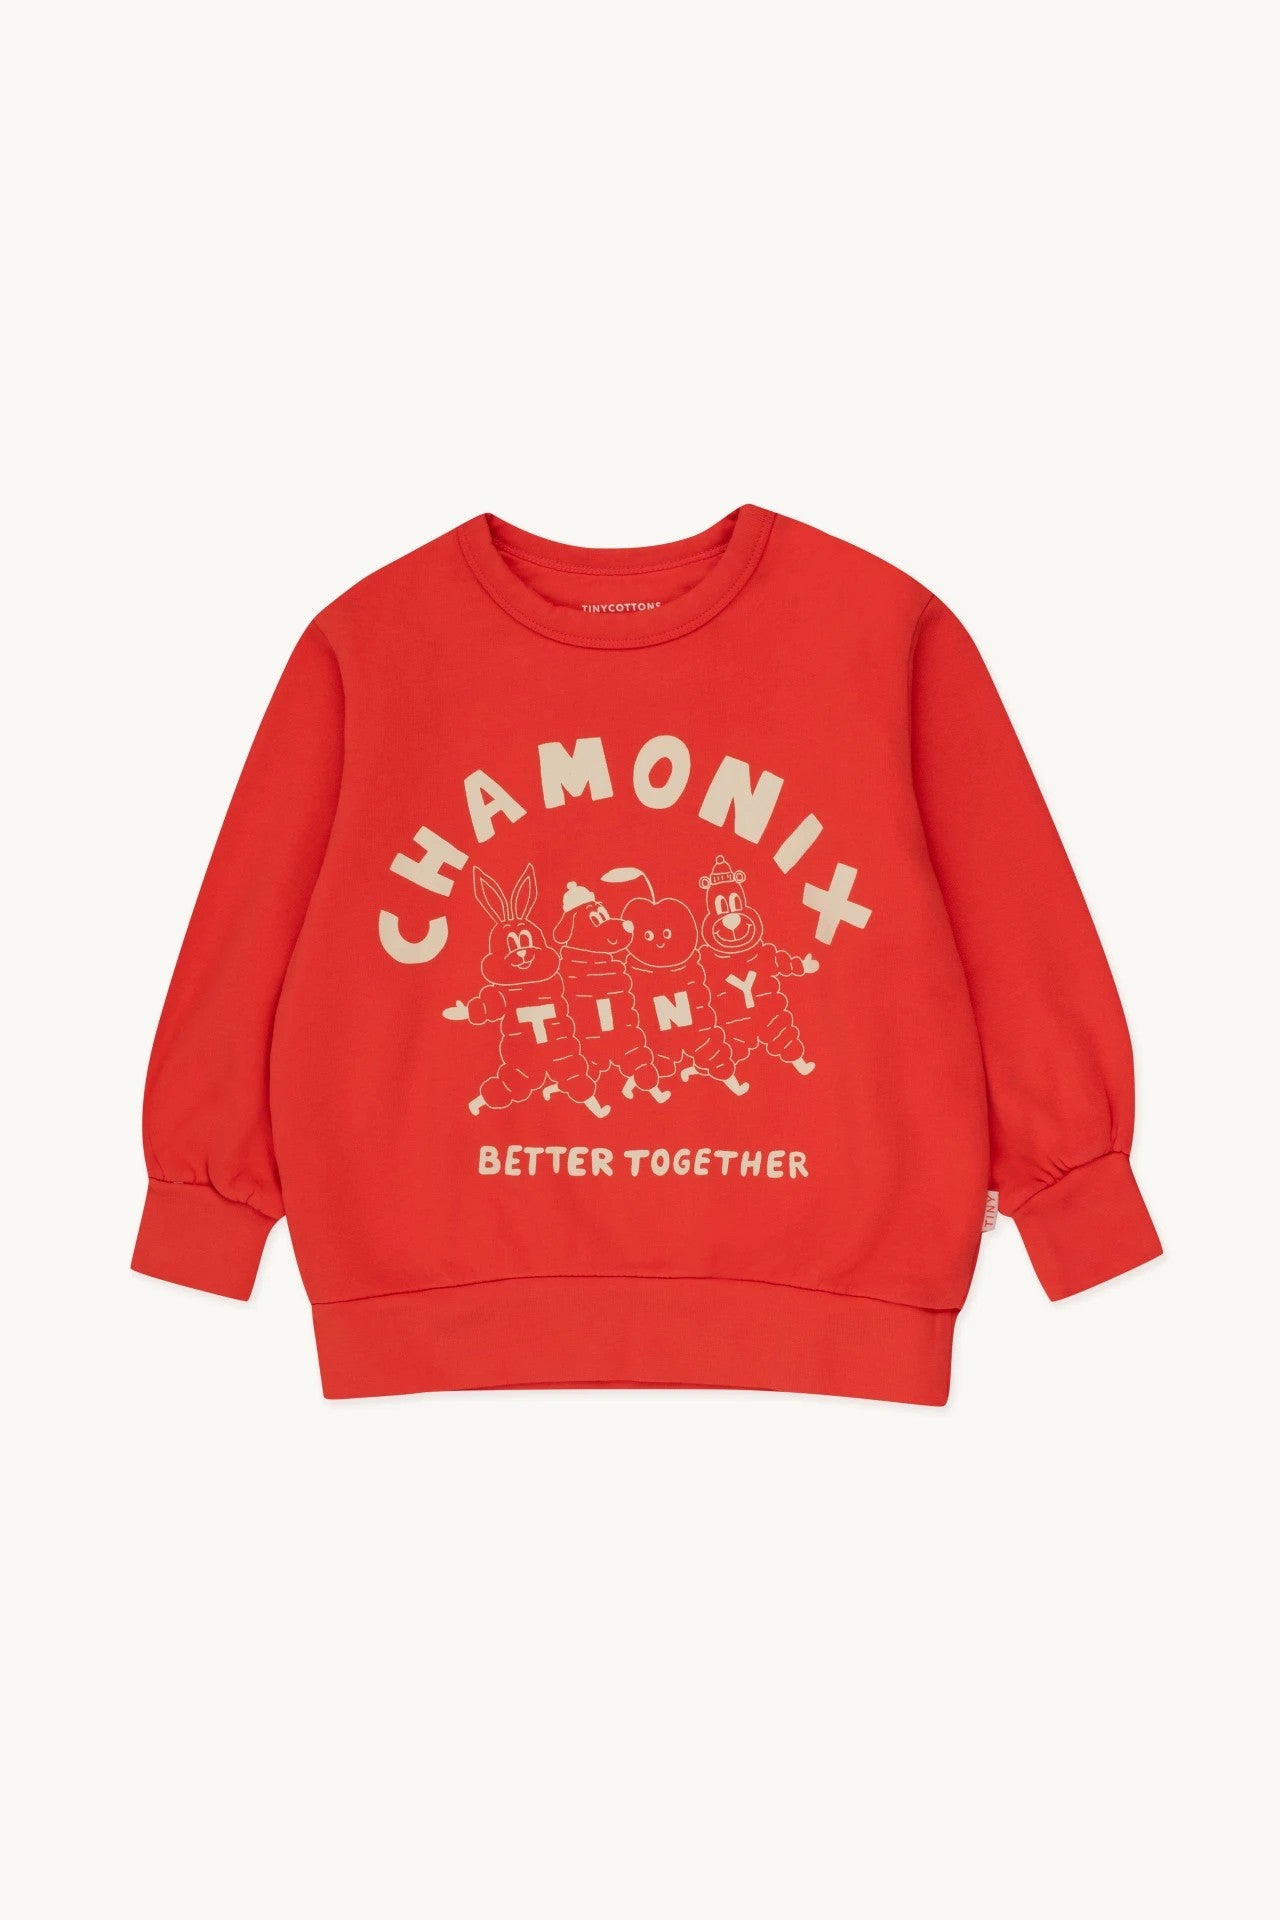 Tinycottons sweatshirt Chamonix